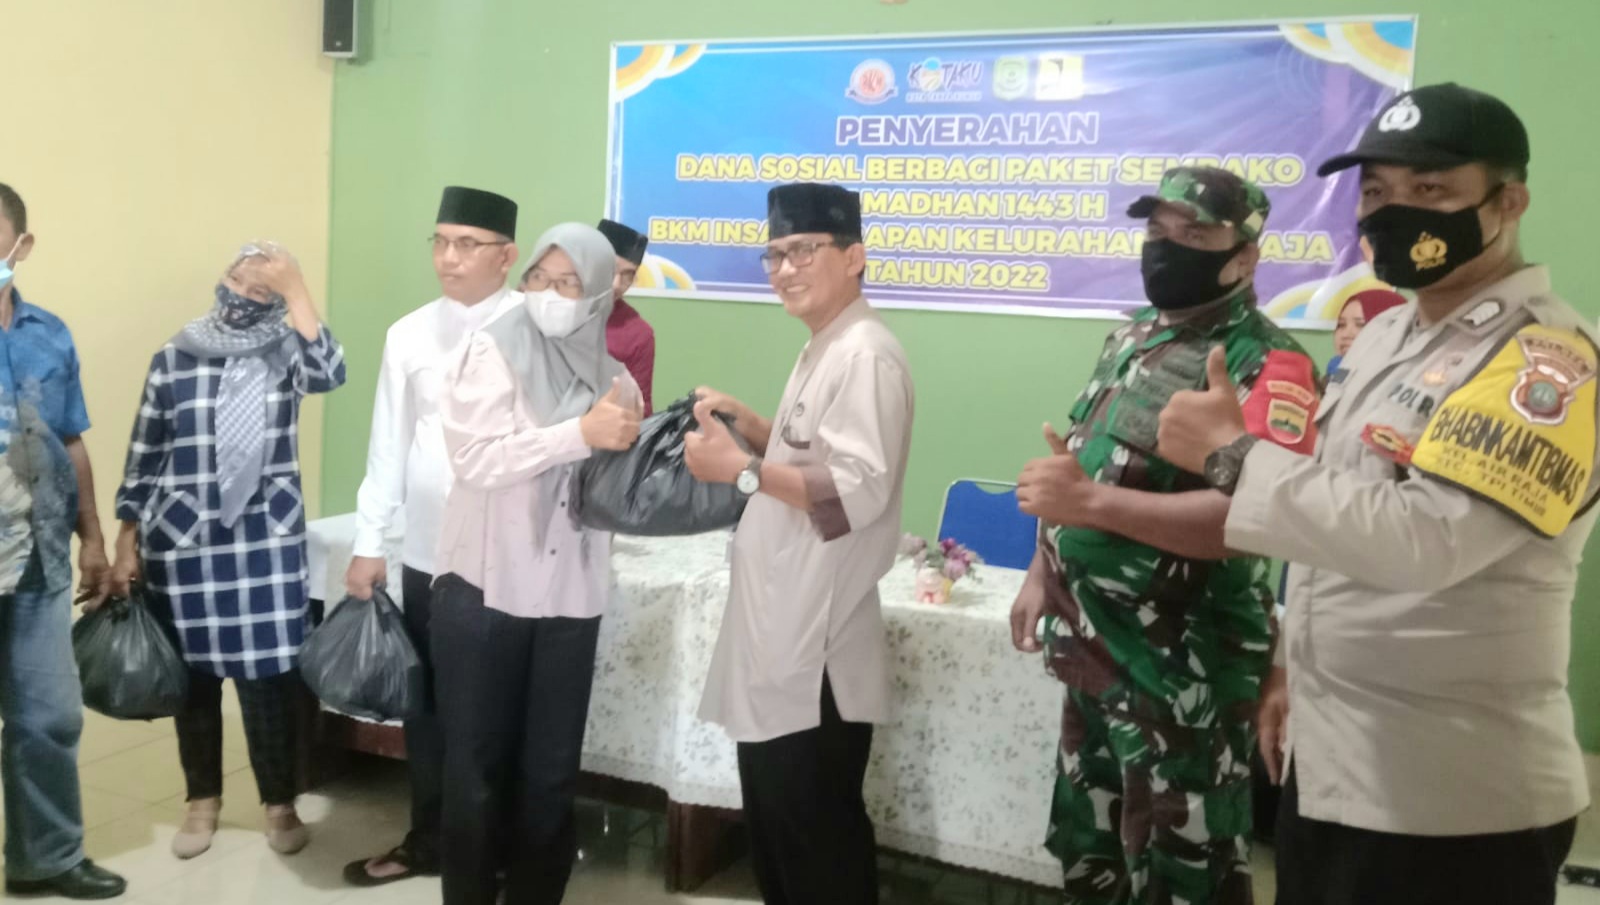 Kelurahan Air Raja Bersama BKM Insan Harapan Bagikan 100 Paket Sembako Ramadhan